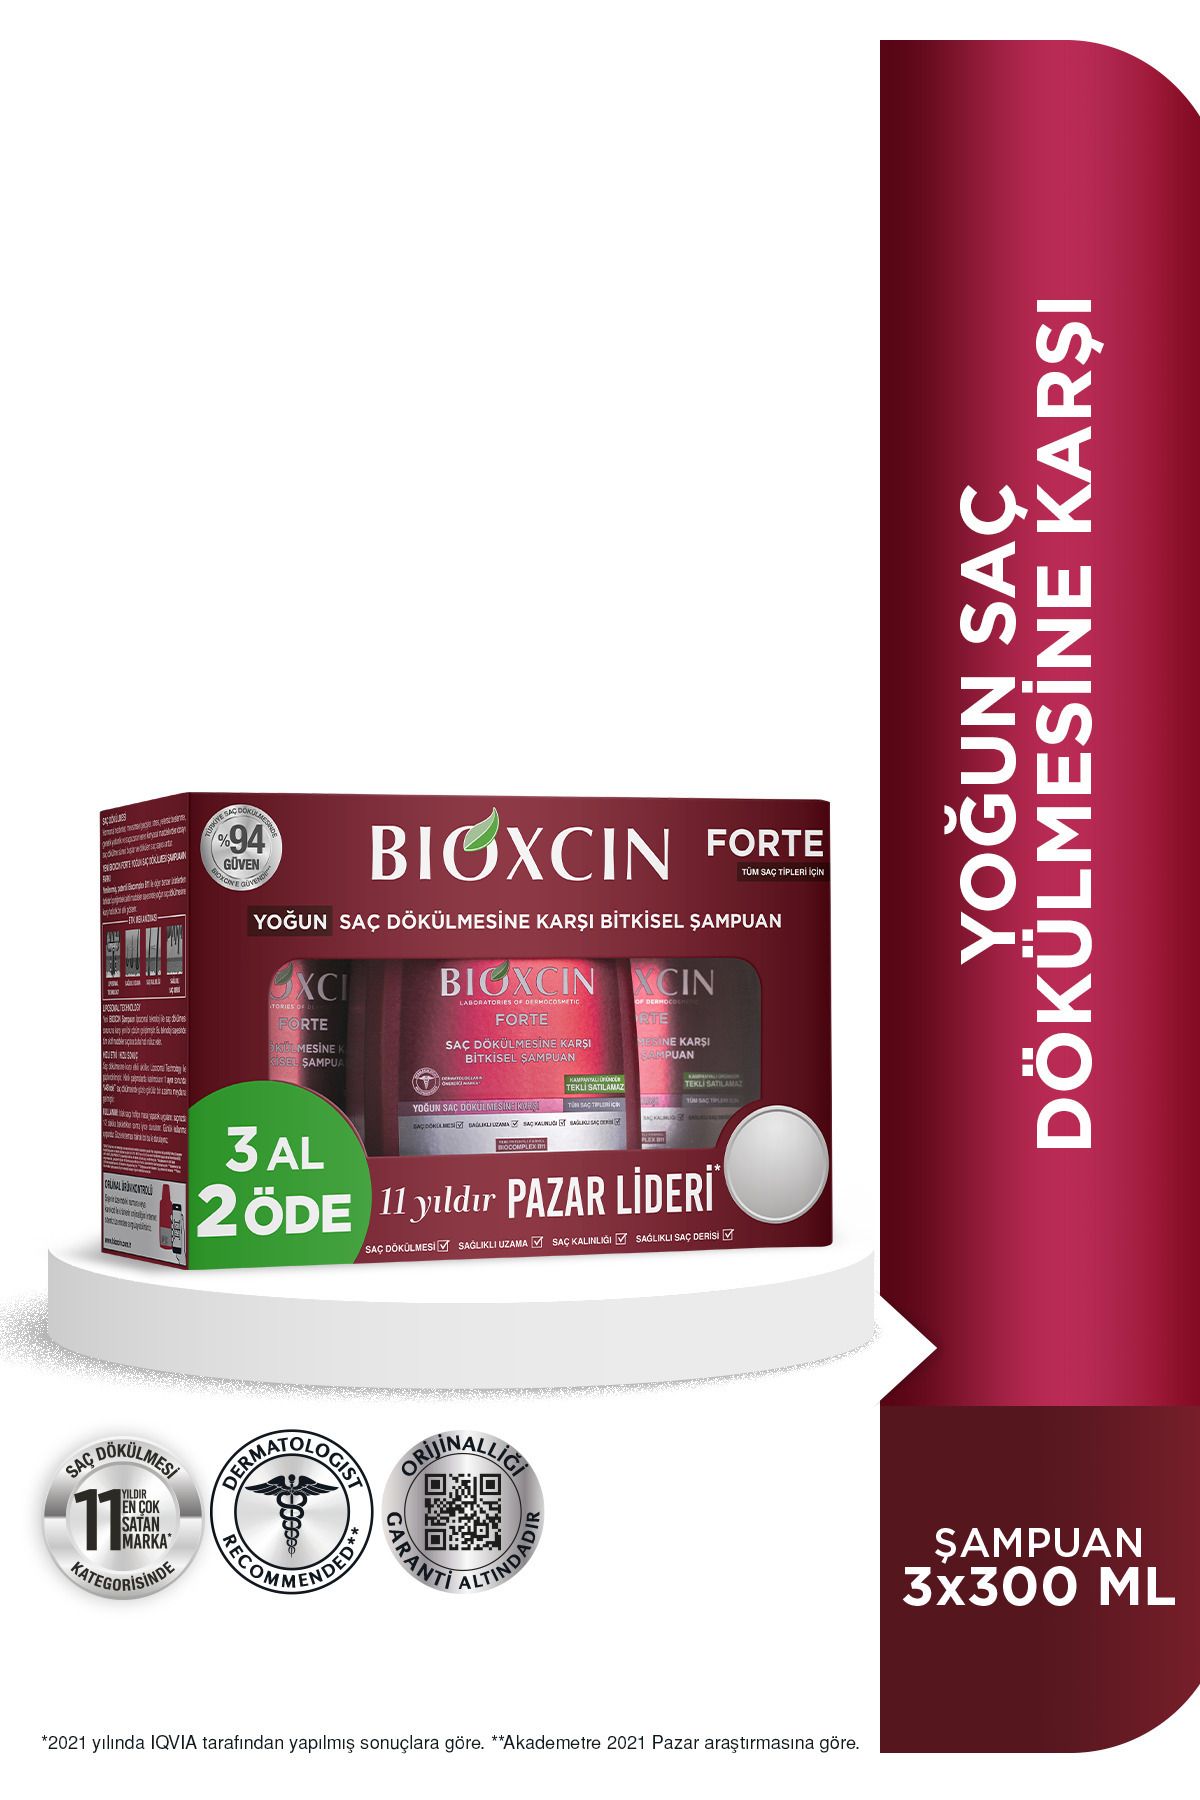 Bioxcin Forte Şampuan 3 Al 2 Öde 3x300 Ml - Yoğun Saç Dökülmesi Şampuanı